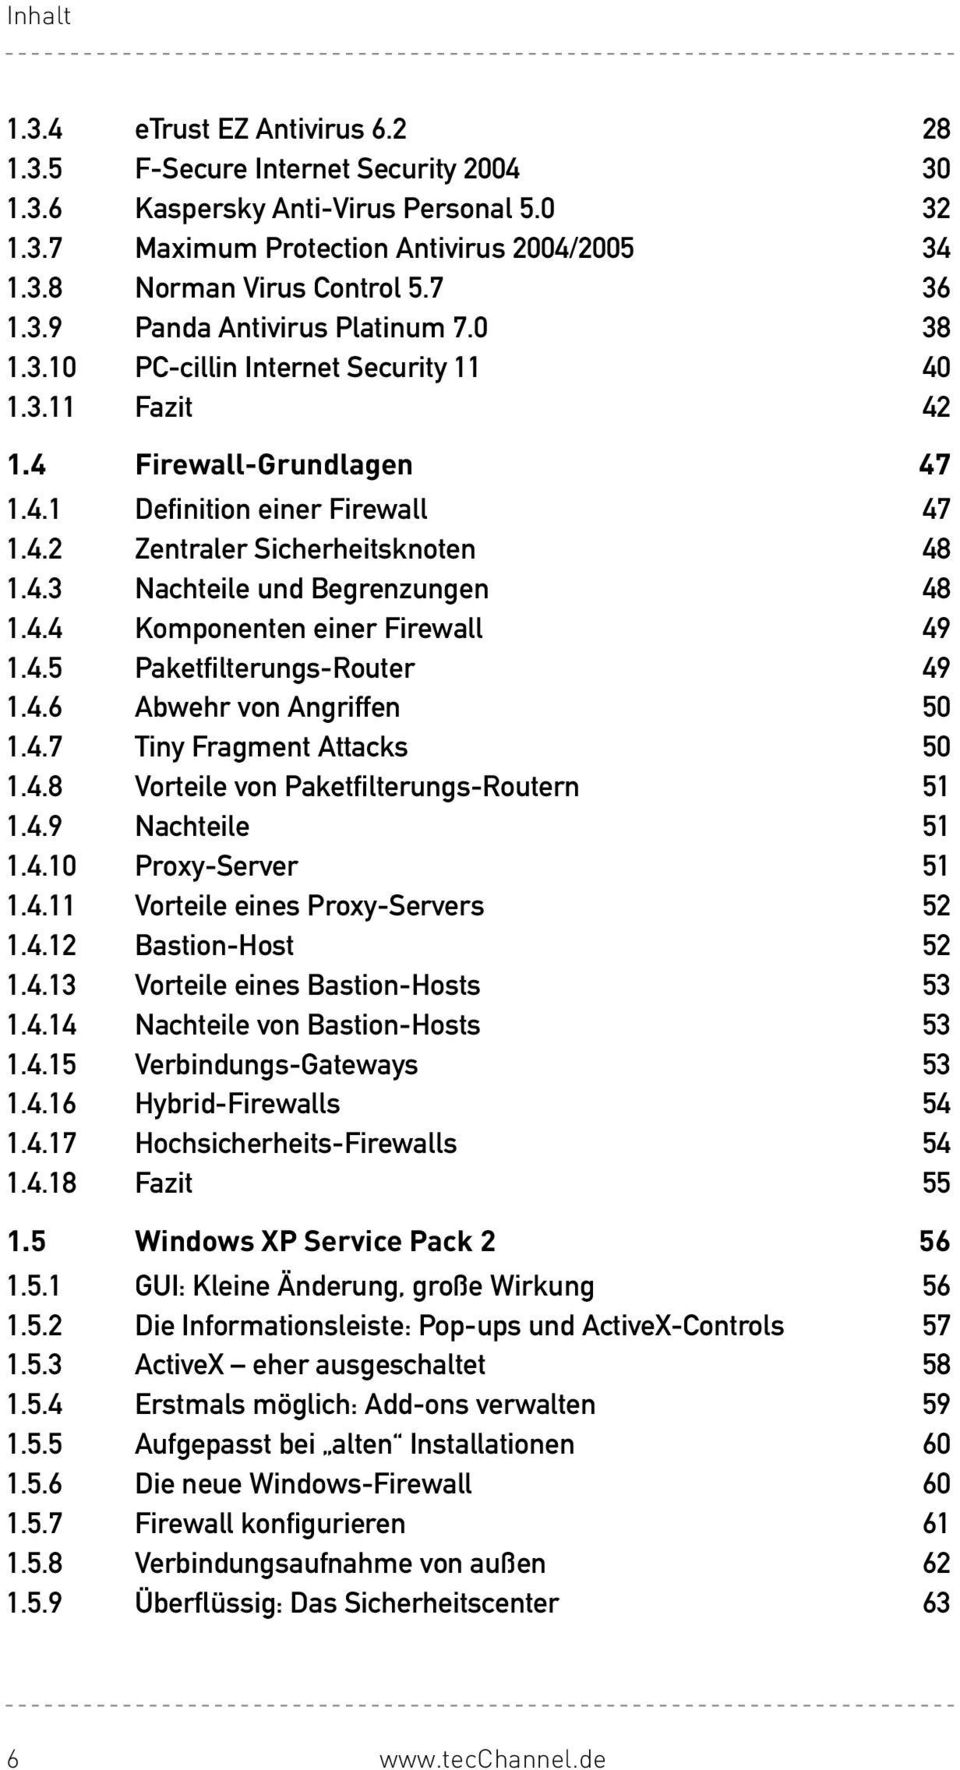 4.3 Nachteile und Begrenzungen 48 1.4.4 Komponenten einer Firewall 49 1.4.5 Paketfilterungs-Router 49 1.4.6 Abwehr von Angriffen 50 1.4.7 Tiny Fragment Attacks 50 1.4.8 Vorteile von Paketfilterungs-Routern 51 1.